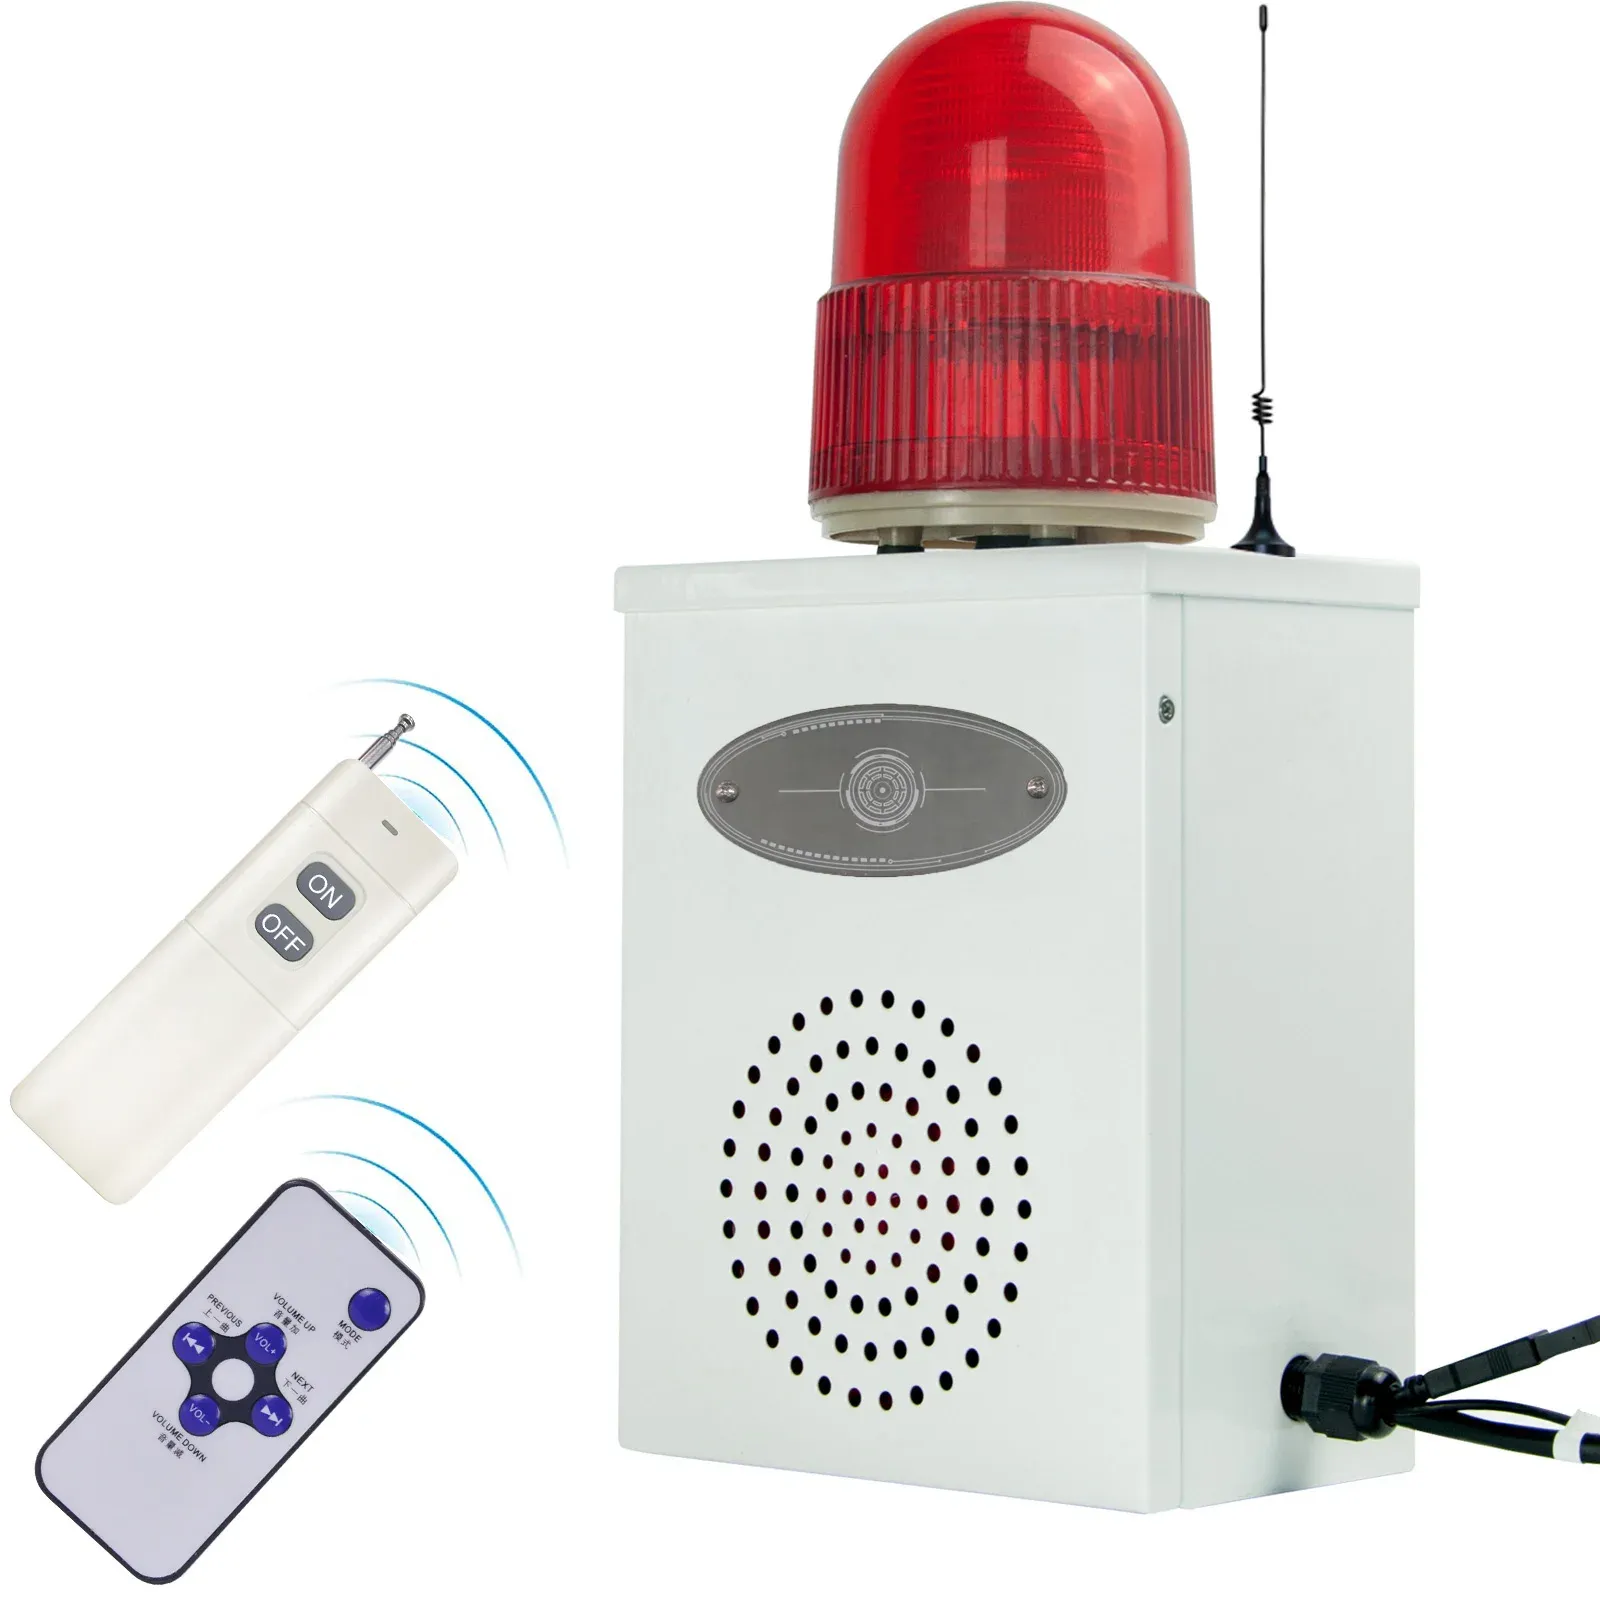 Siren kablosuz uzaktan kumanda 2000m 120db boynuz ayarlanabilir hacim endüstriyel alarm siren yanıp sönen açık açık güvenlik siren hxb02